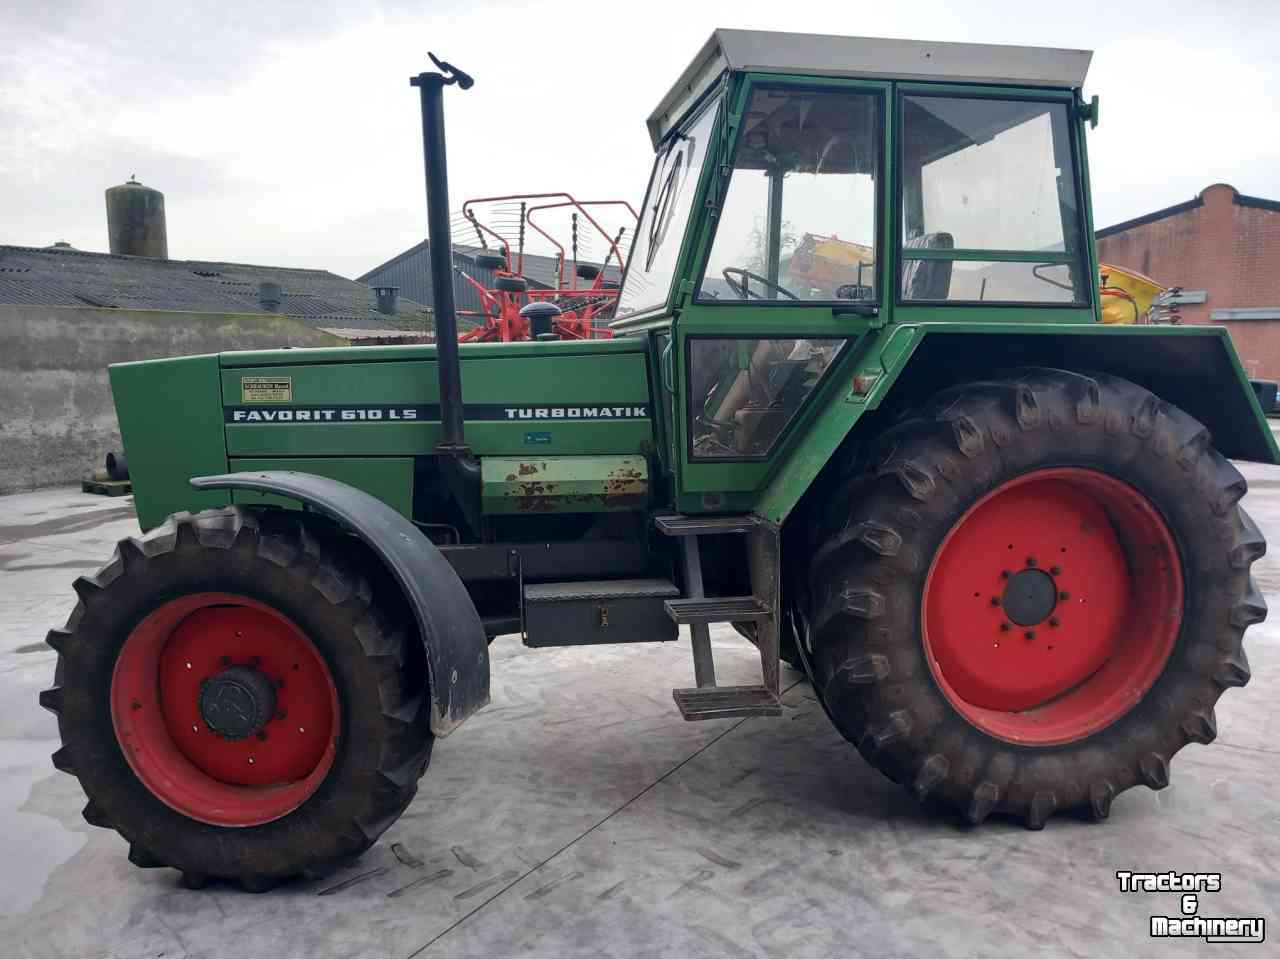 Tracteurs Fendt 610LS